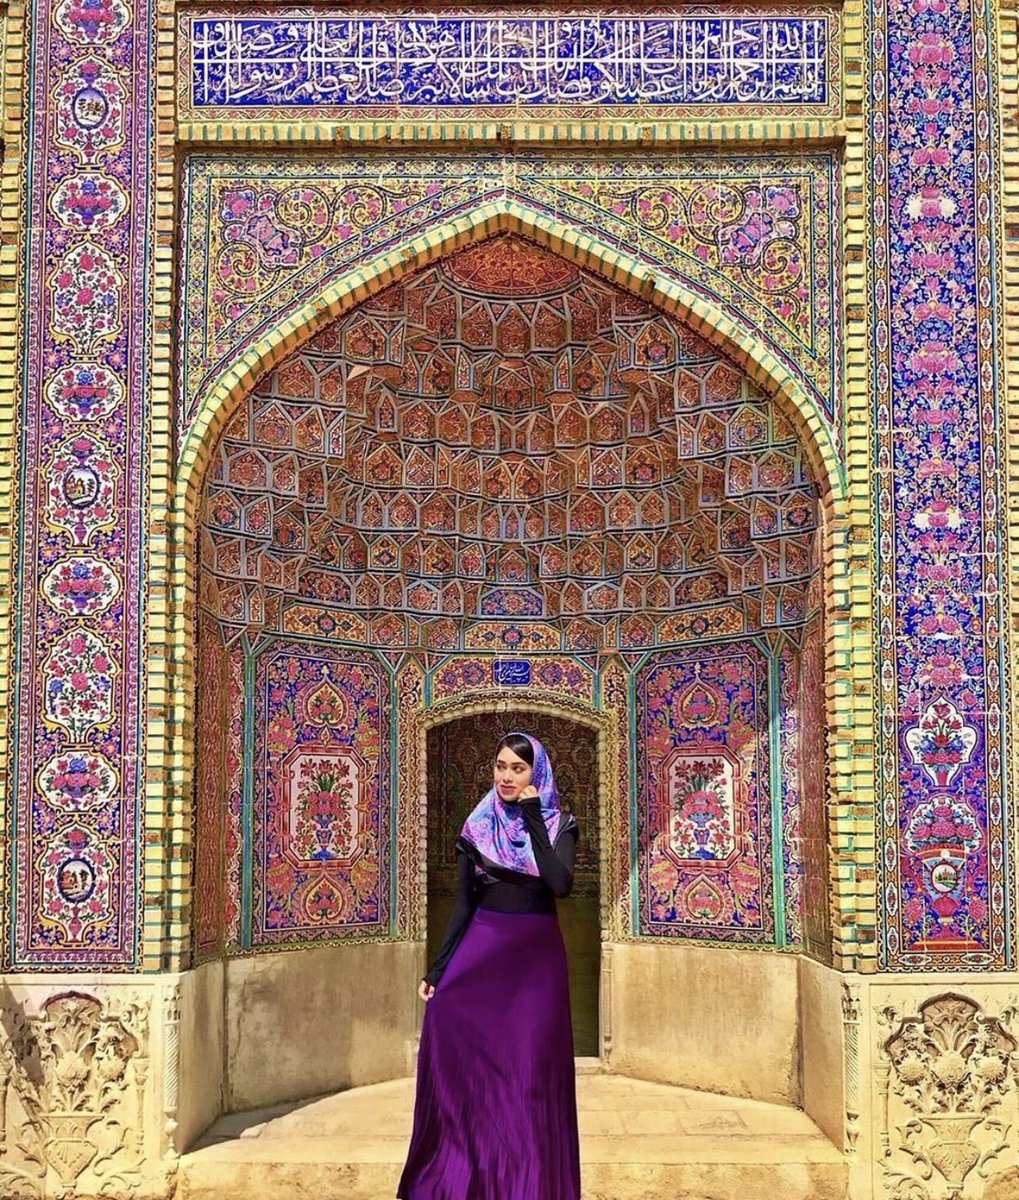 Thread de photos sur la beauté de l’architecture Perse en Iran